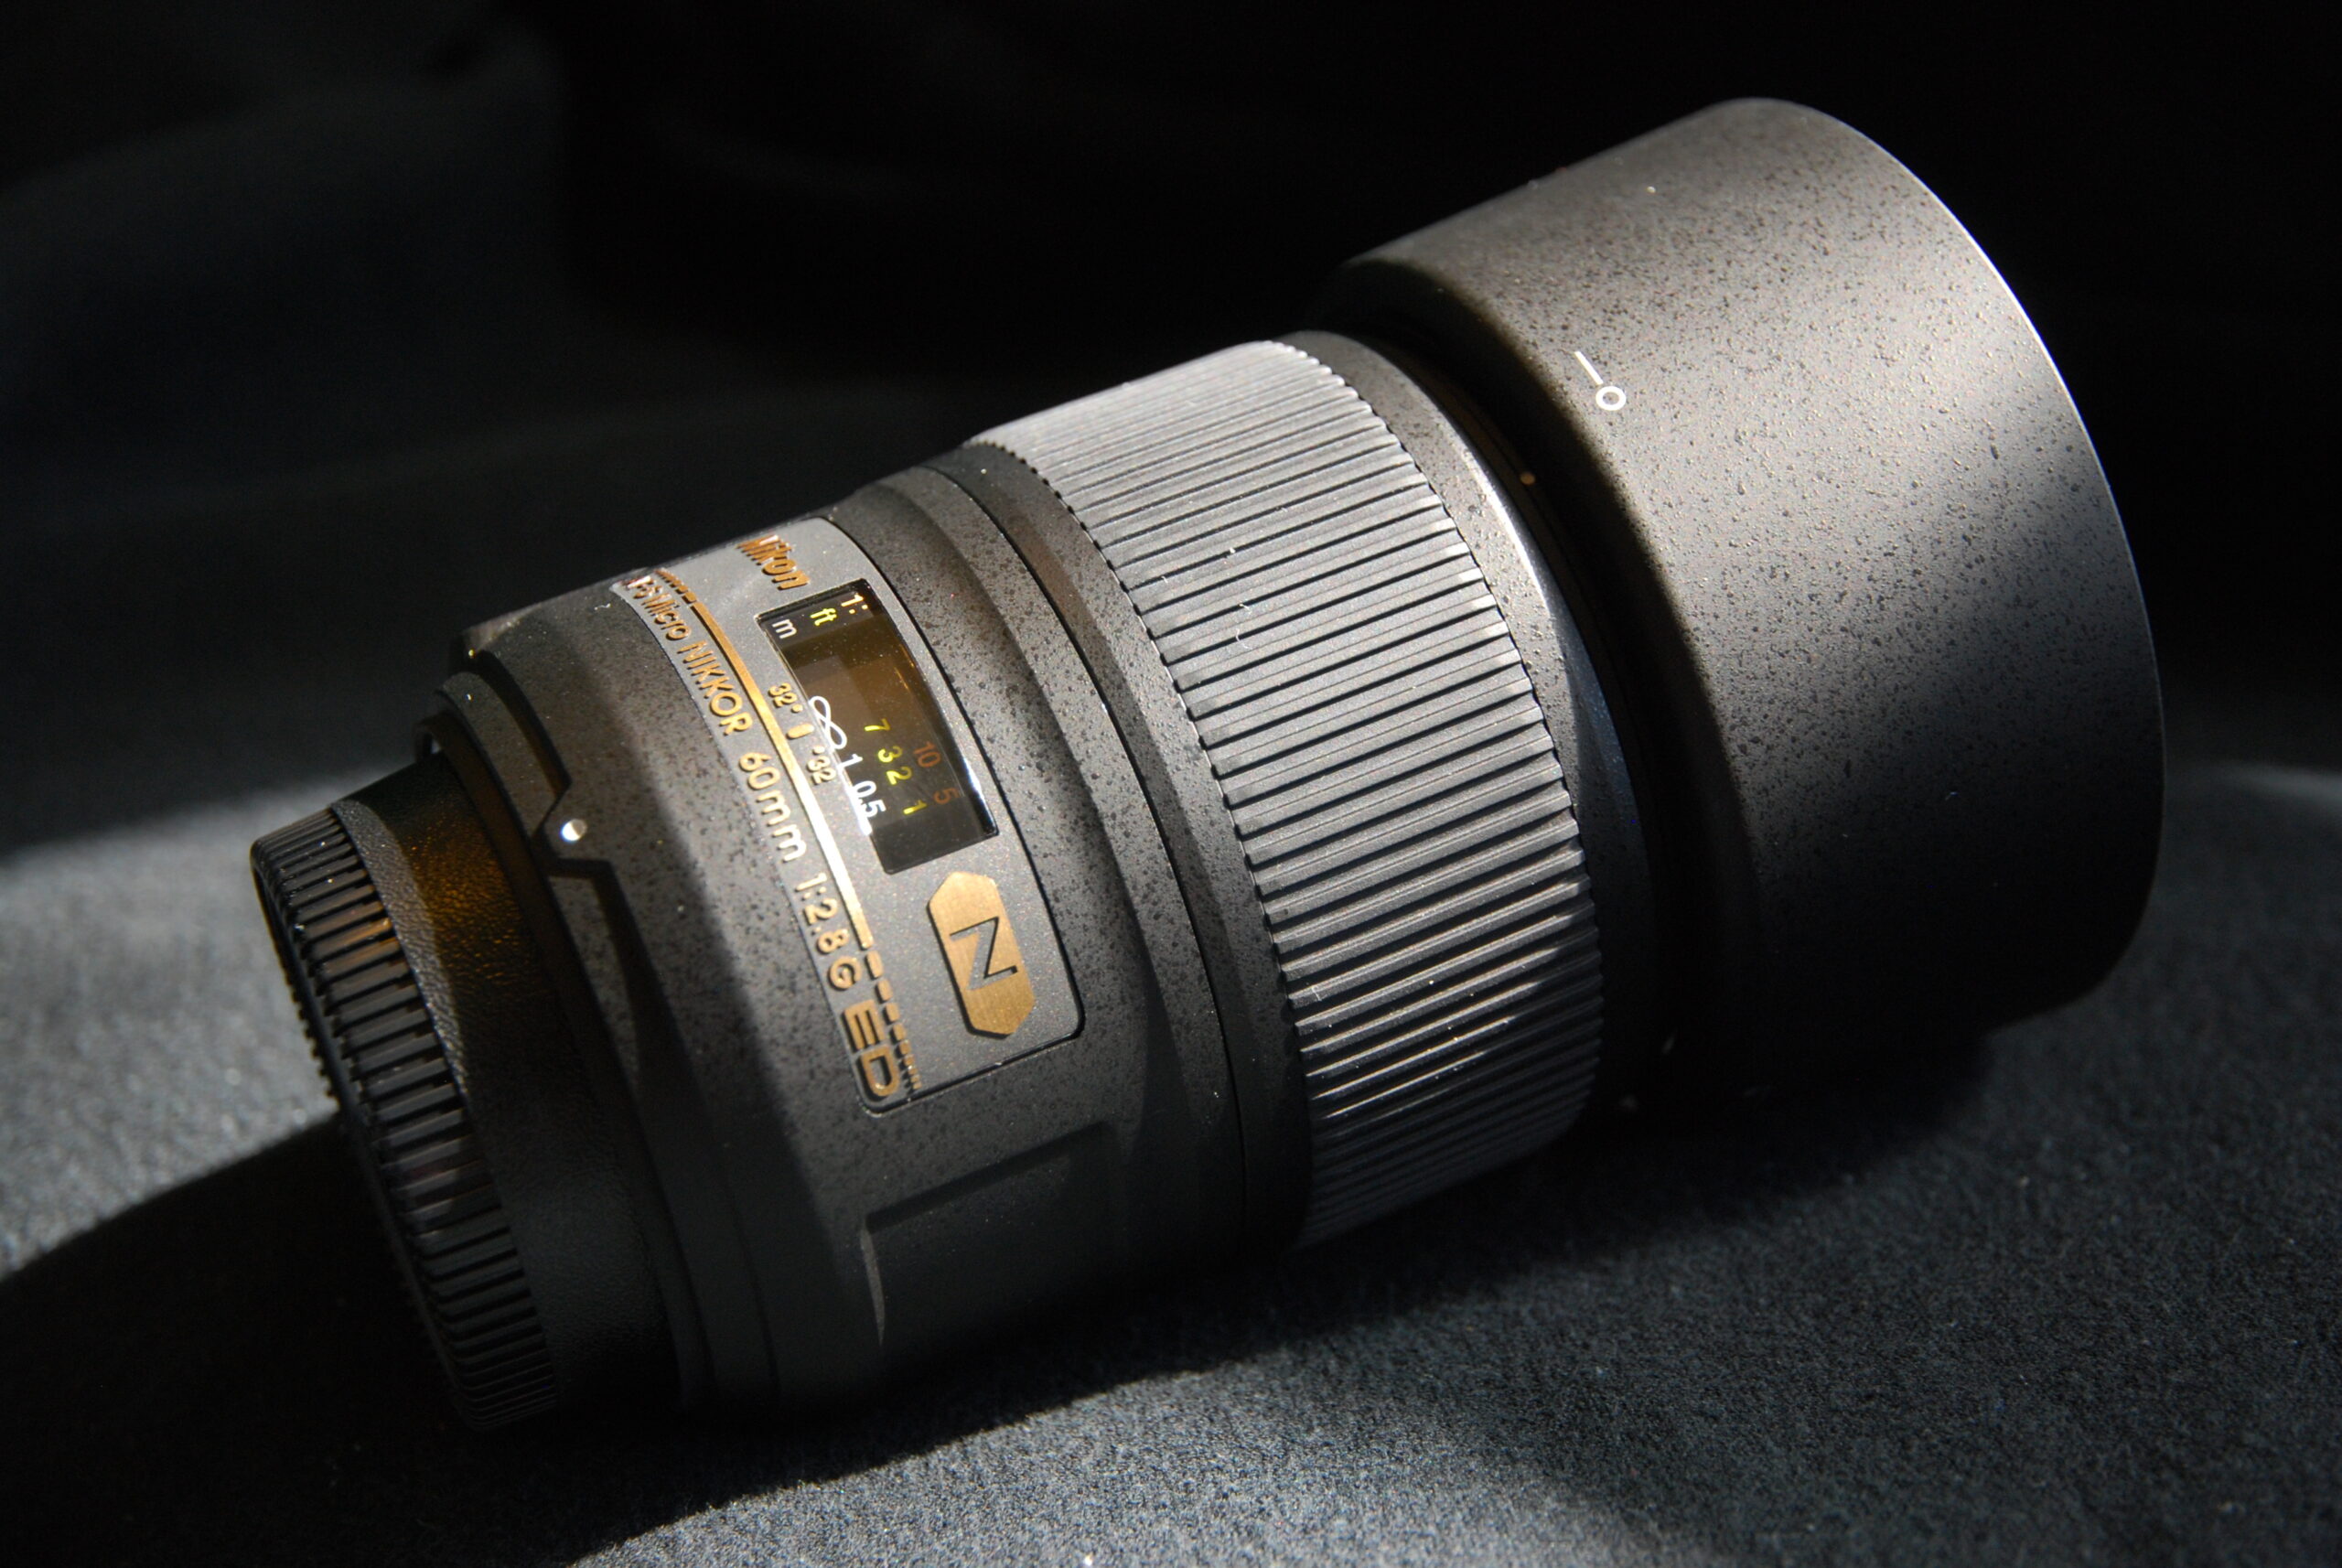 Nikon AF-S Micro-Nikkor 60mm F2.8G ED